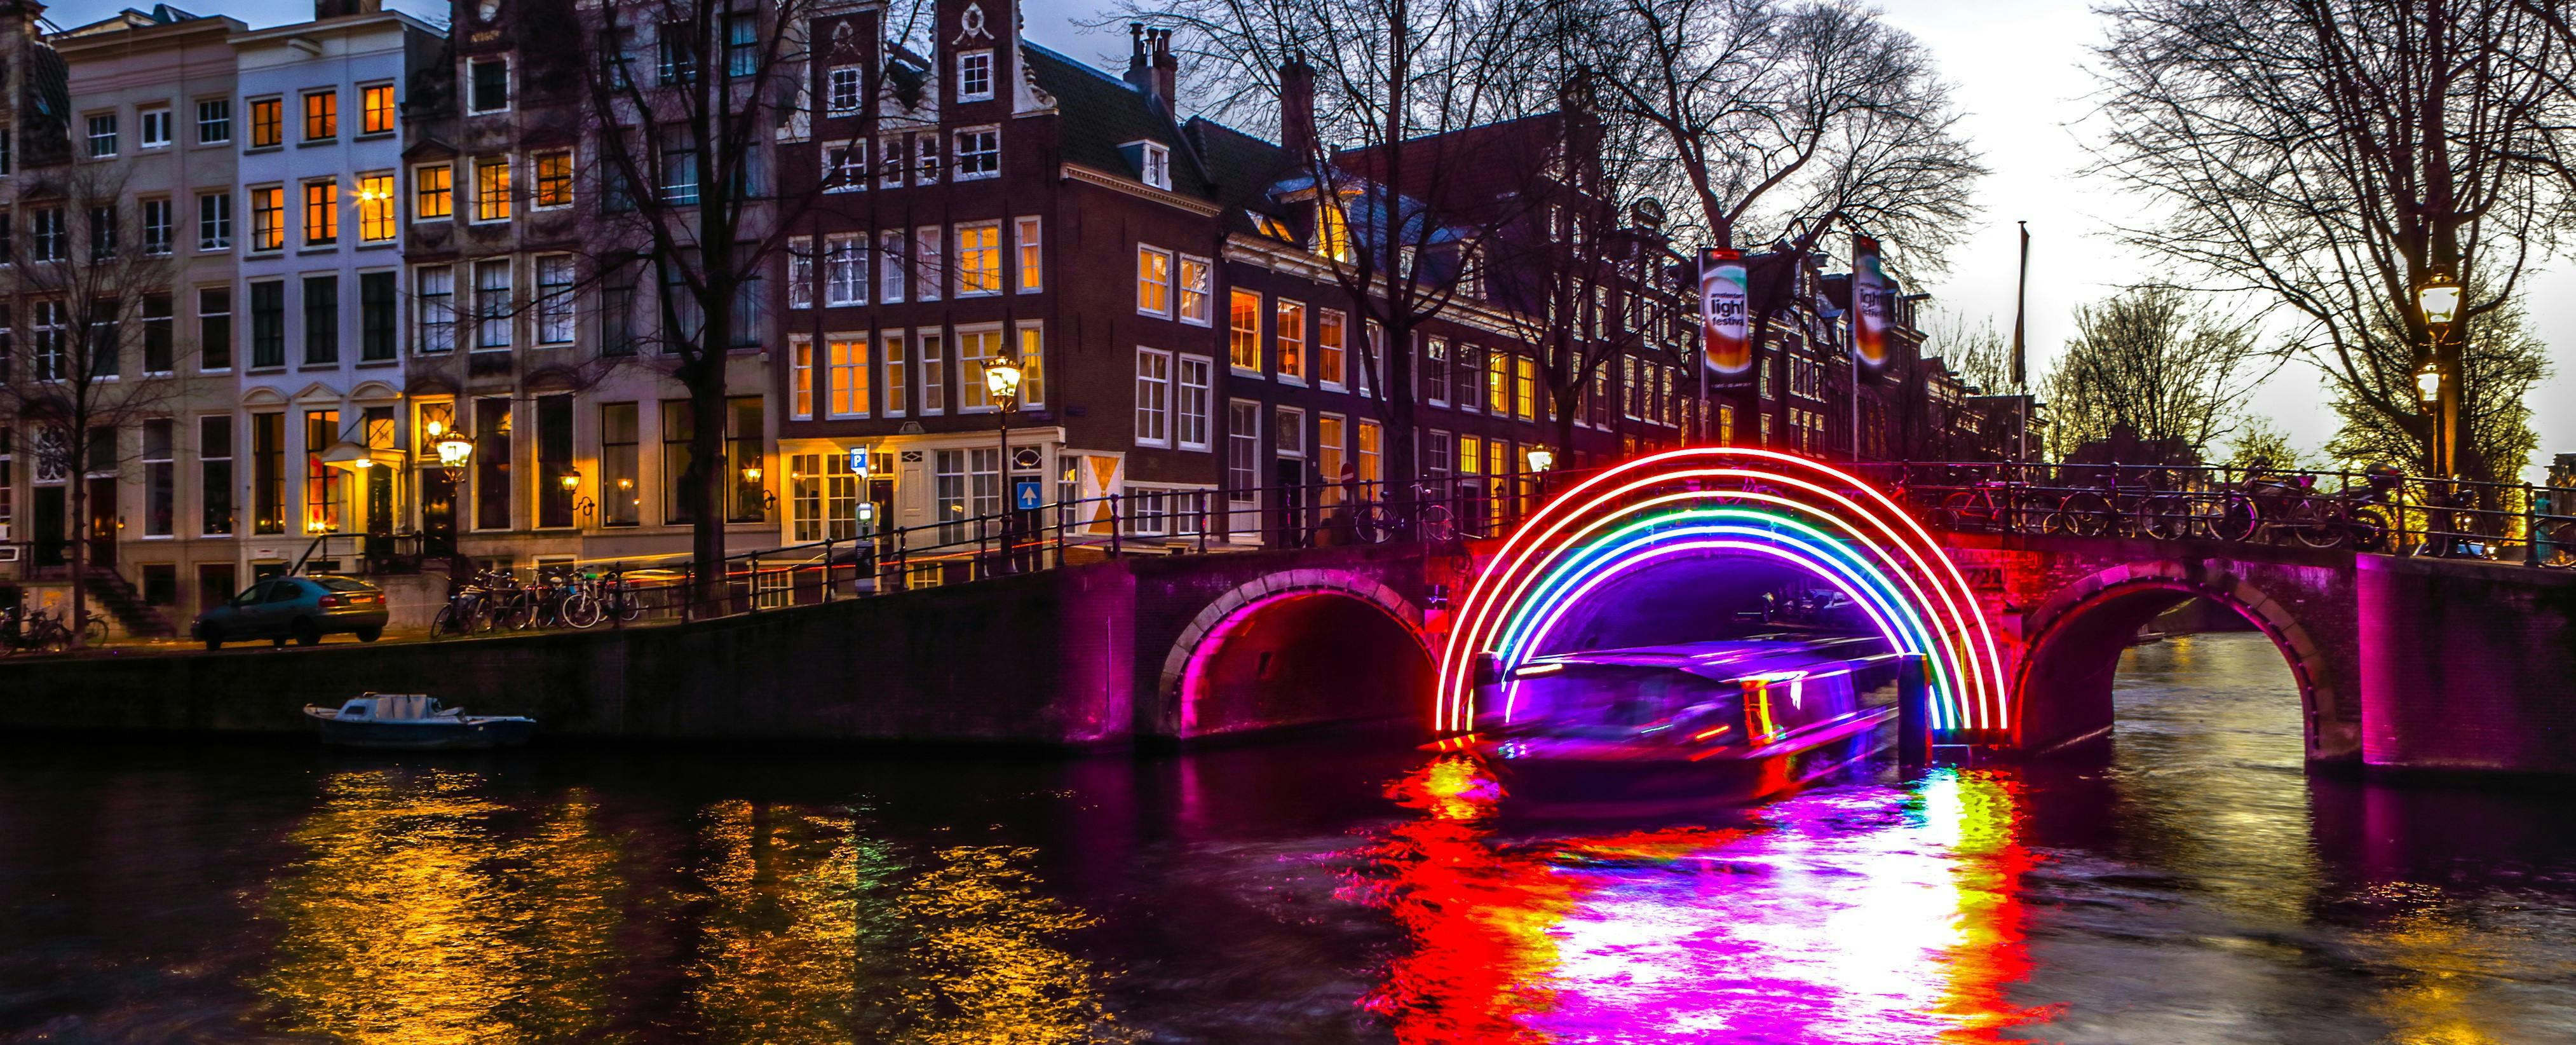 Festival de la Luz de Ámsterdam